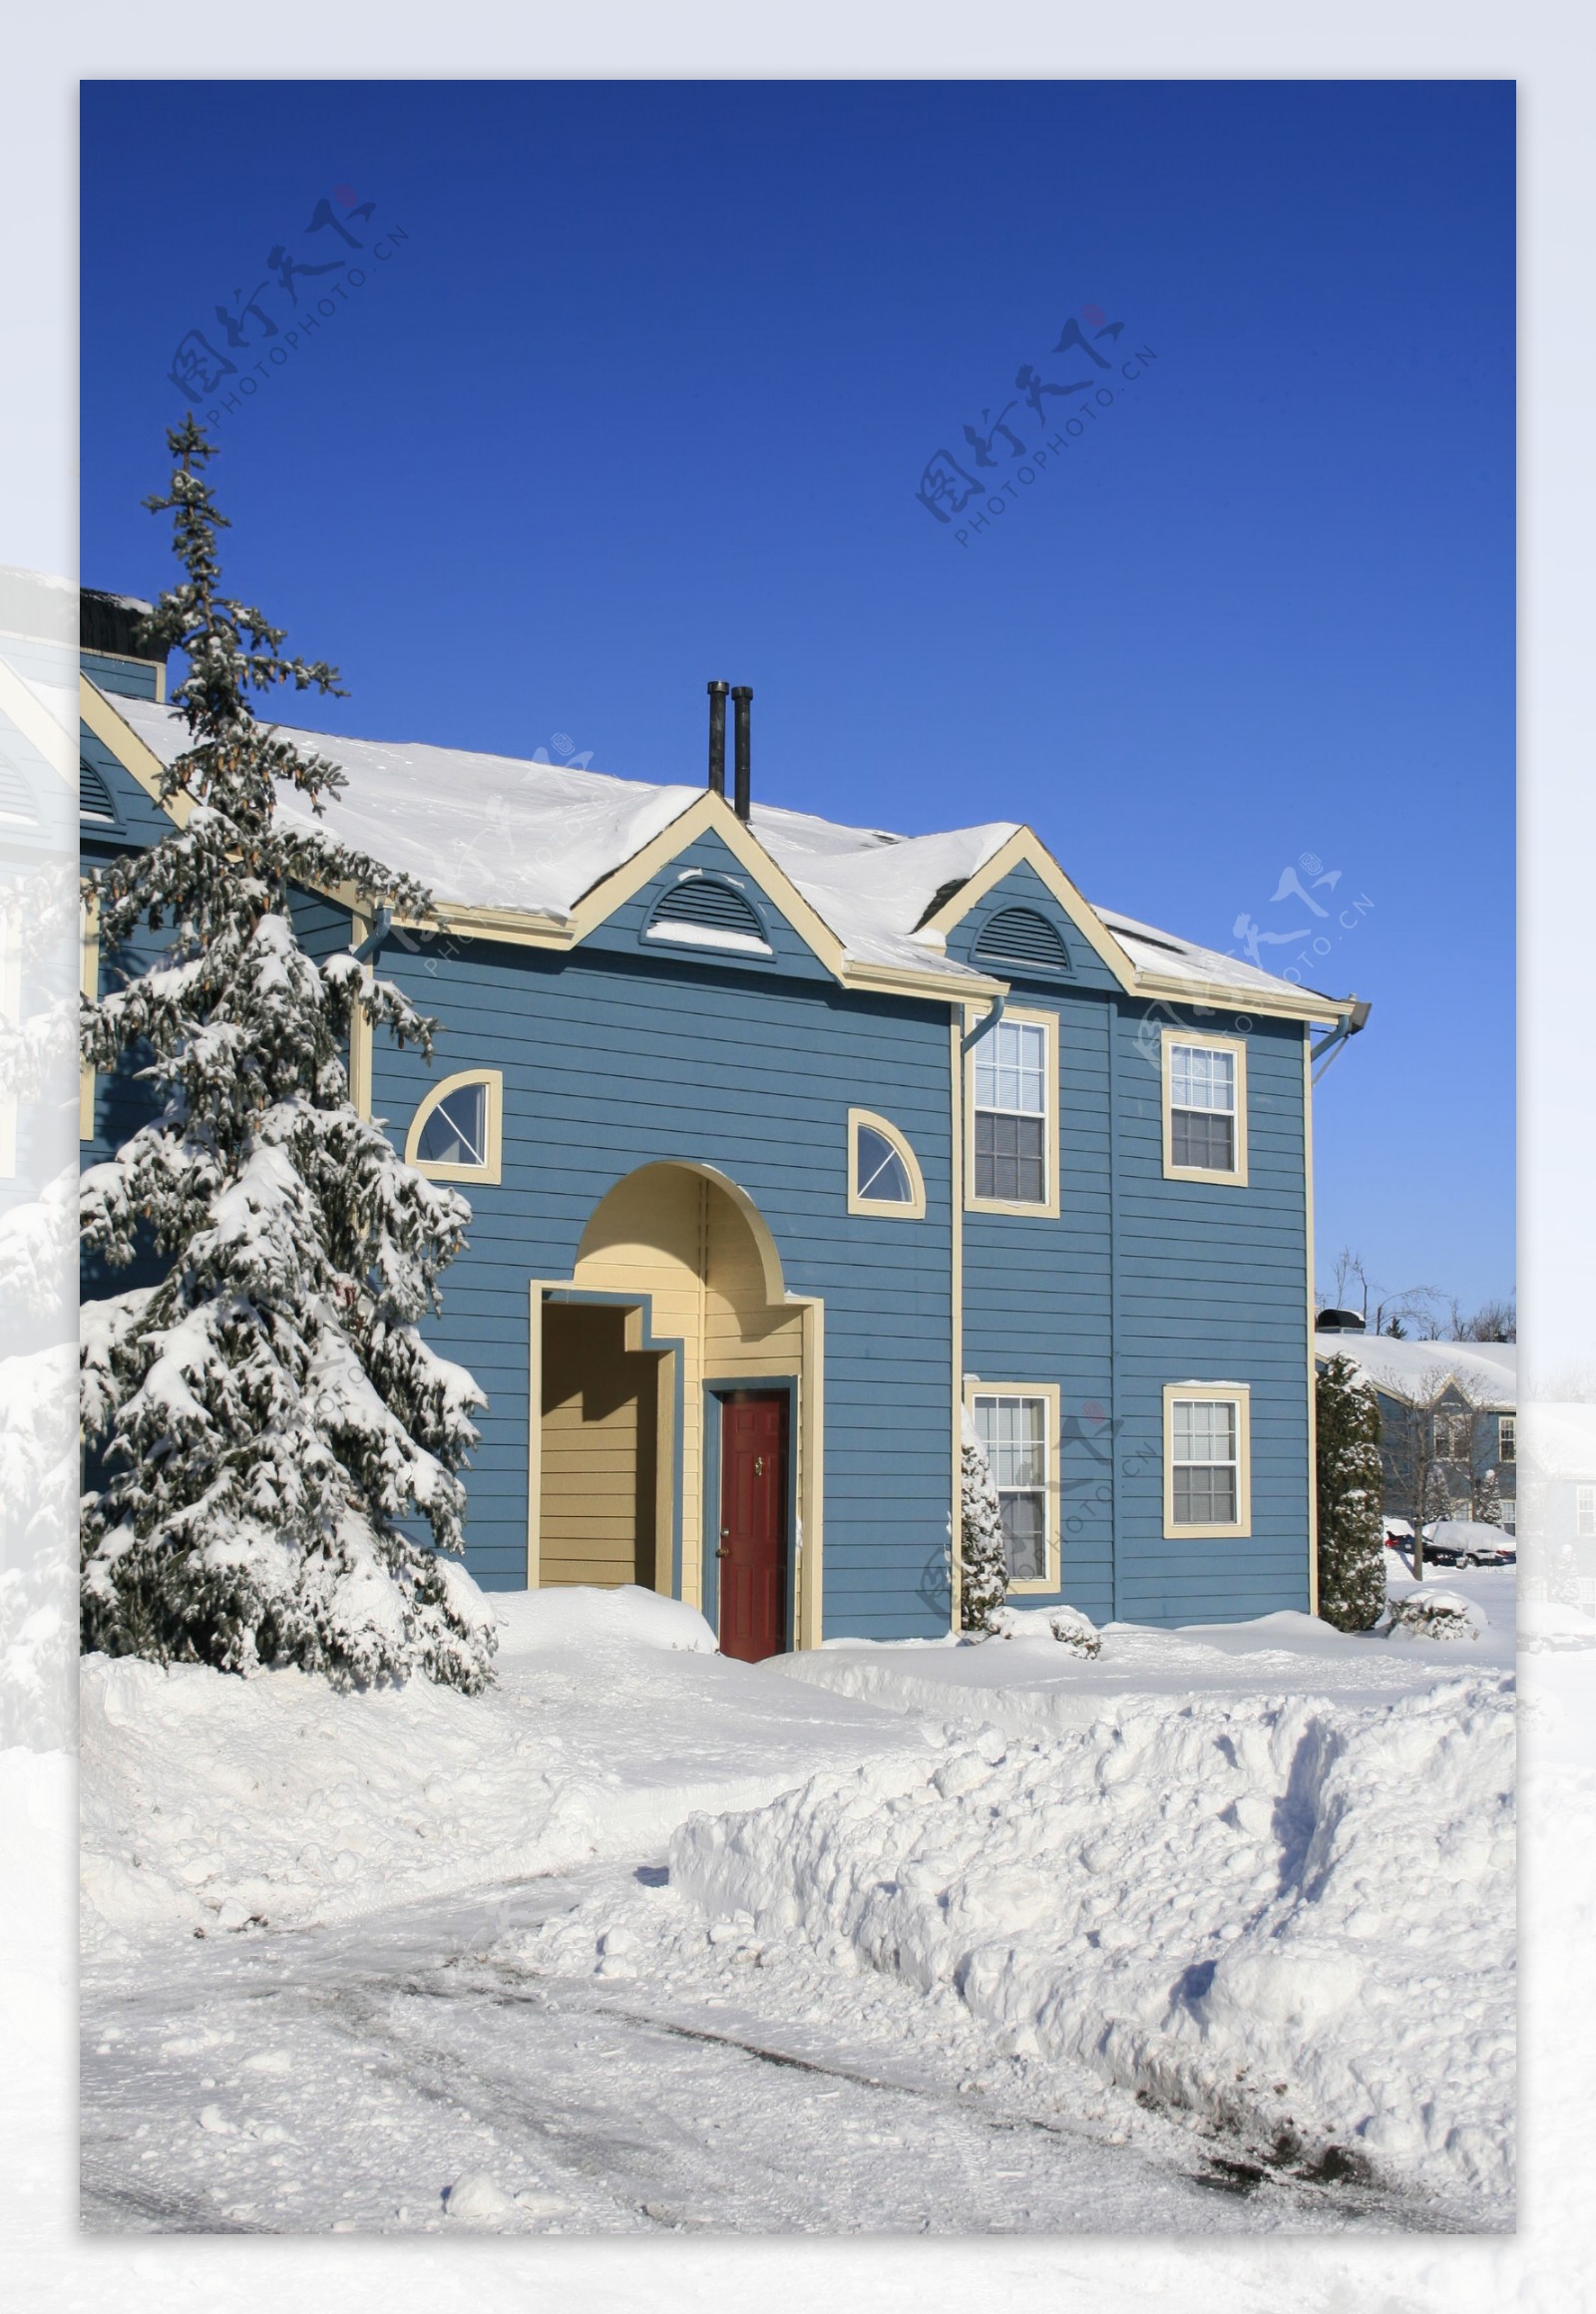 冬天房子与积雪图片